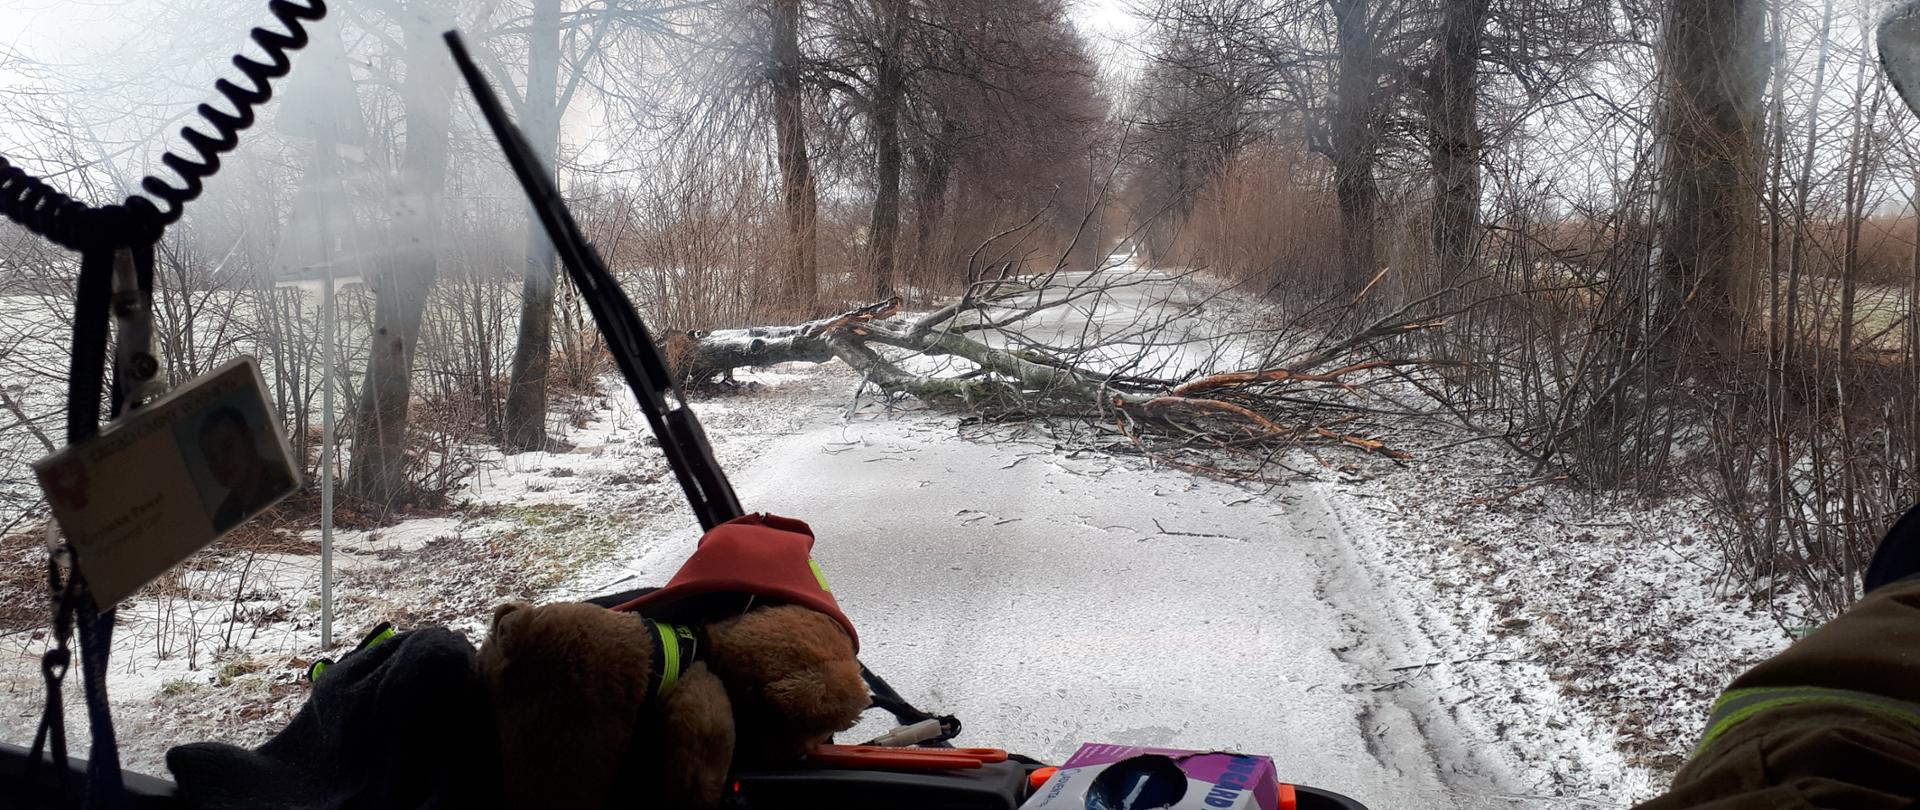 Powalone drzewo na drodze w Boleszynie. Zdjęcie wykonane w z kokpitu samochodu ratowniczo-gaśniczego